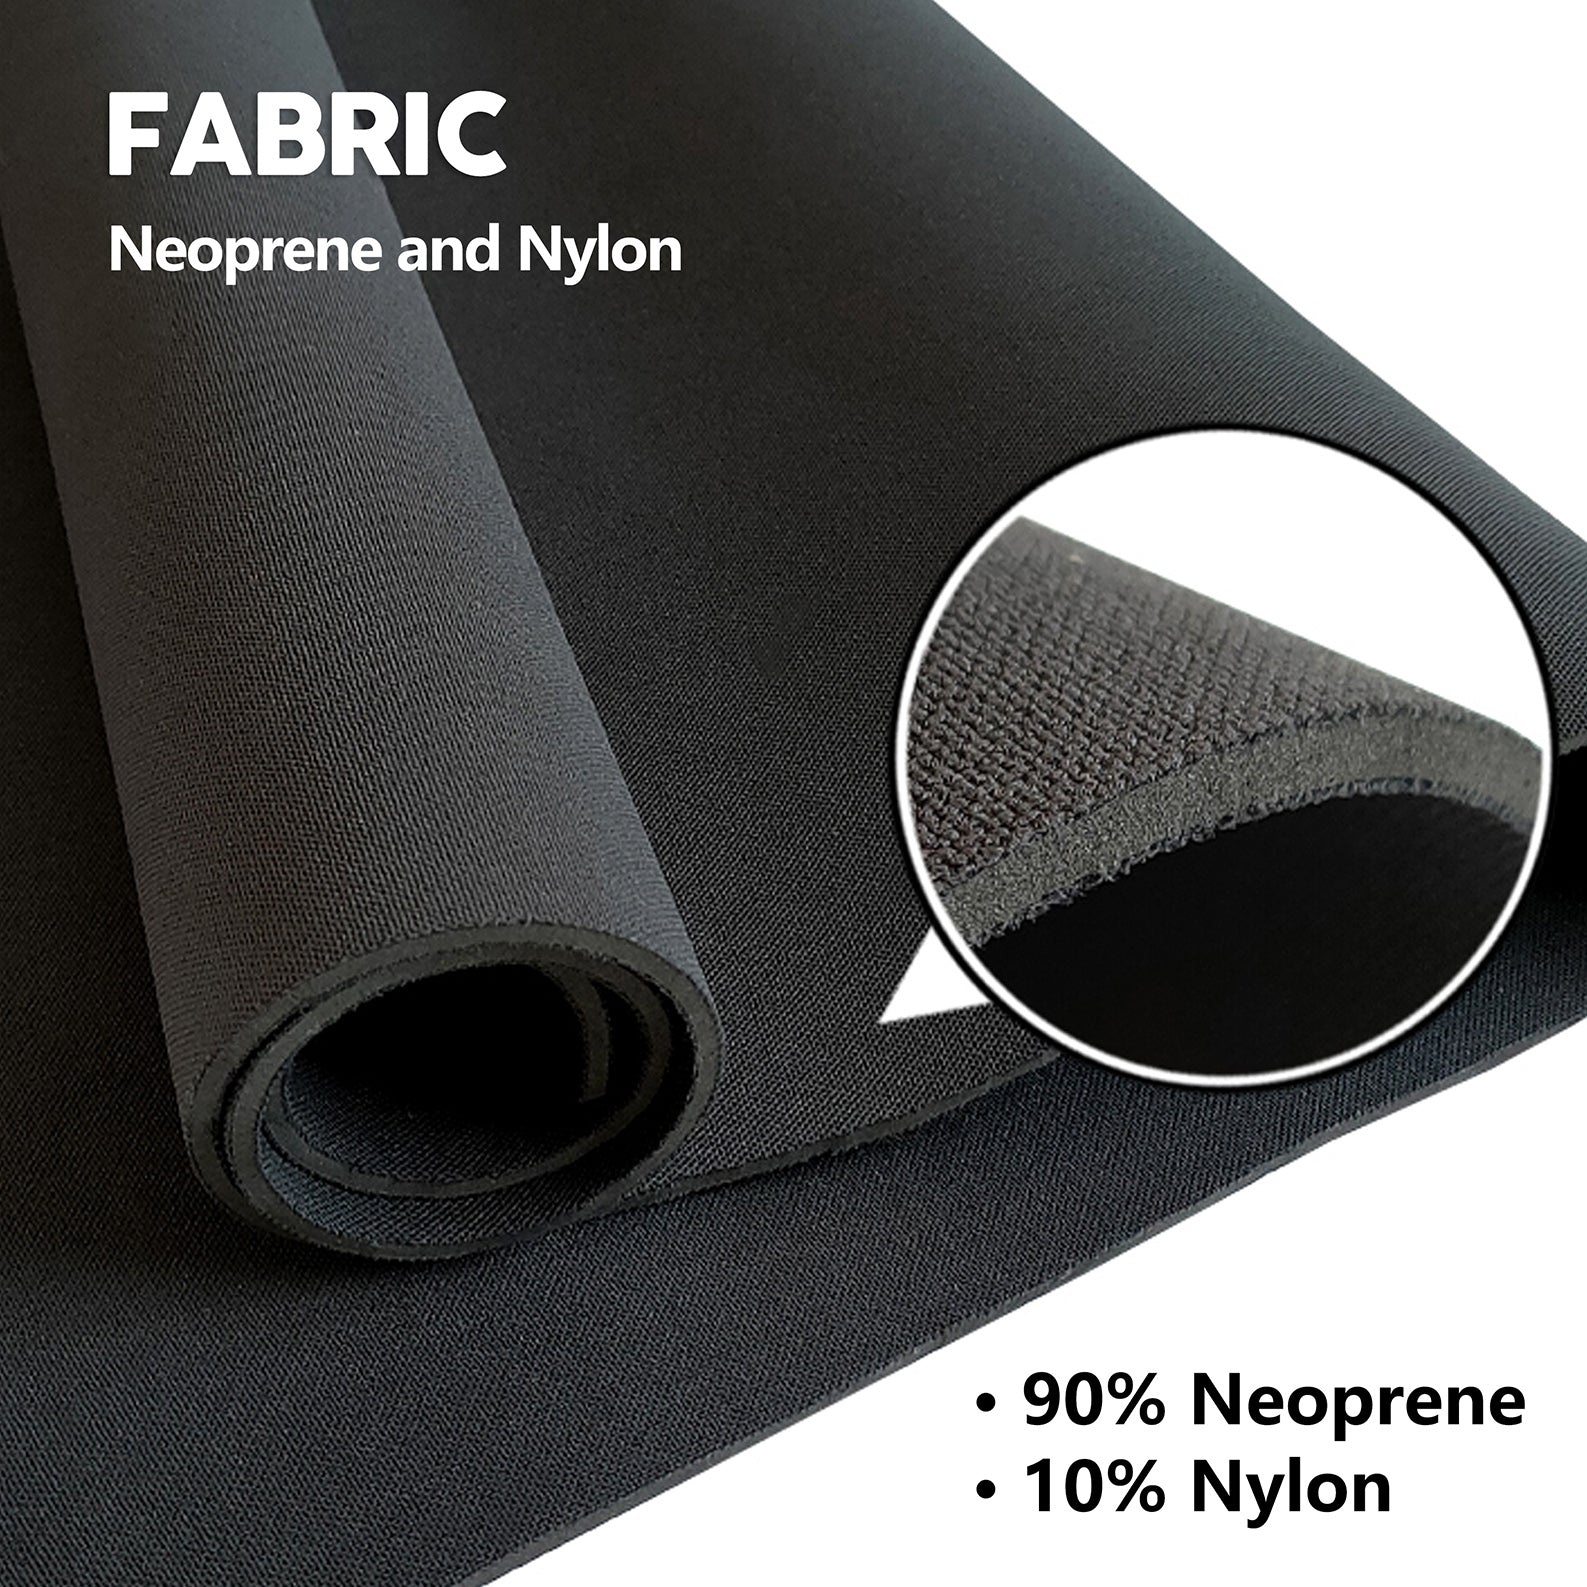 fabric： 90% neoprene and 10% nylon